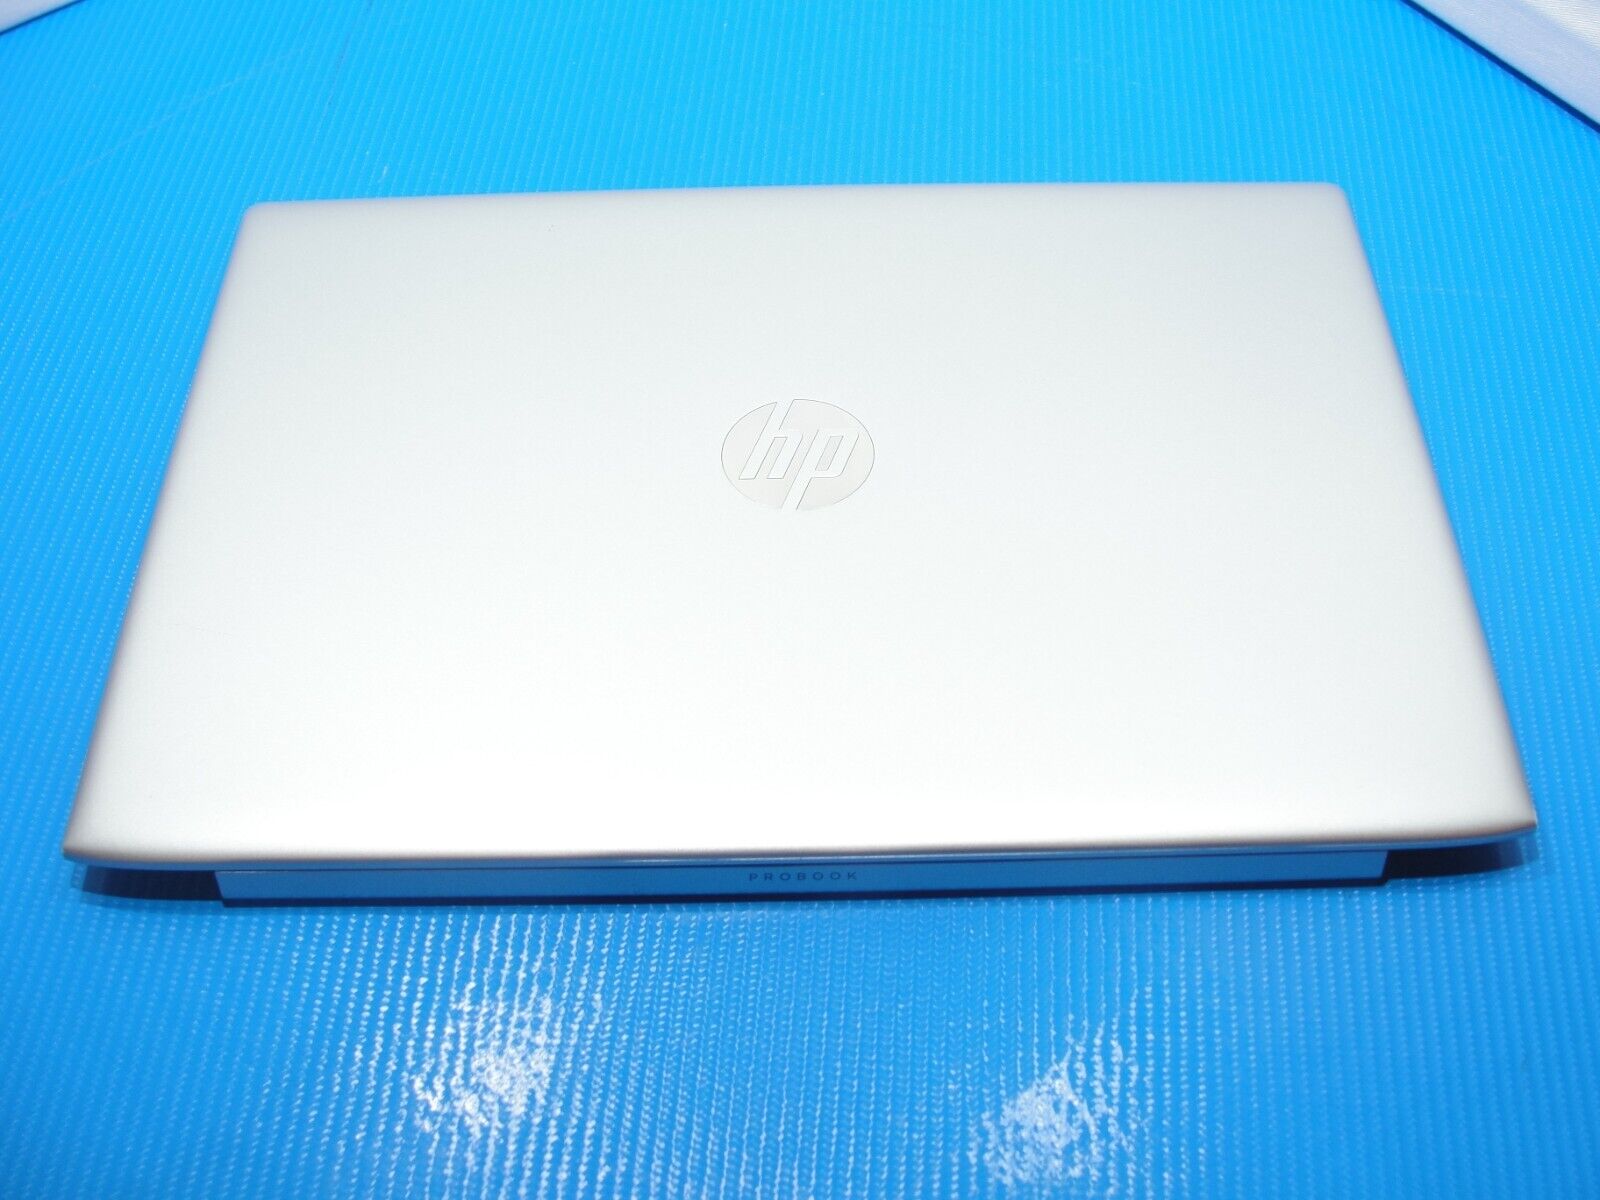 HP ProBook 15.6